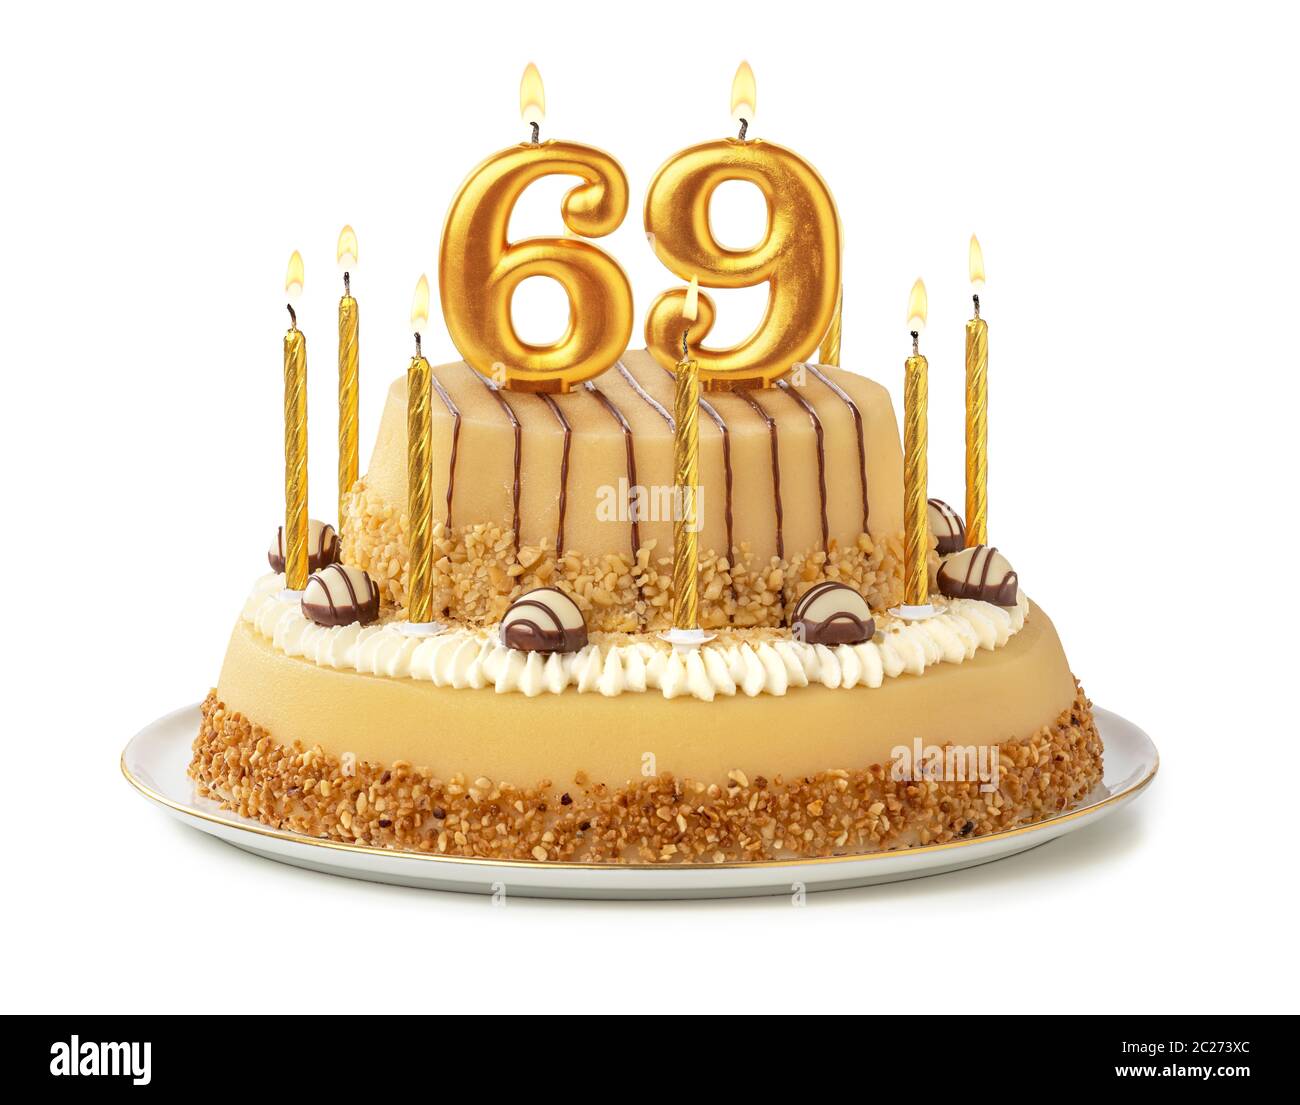 Gâteau de fête avec des bougies d'or - Numéro 69 Banque D'Images